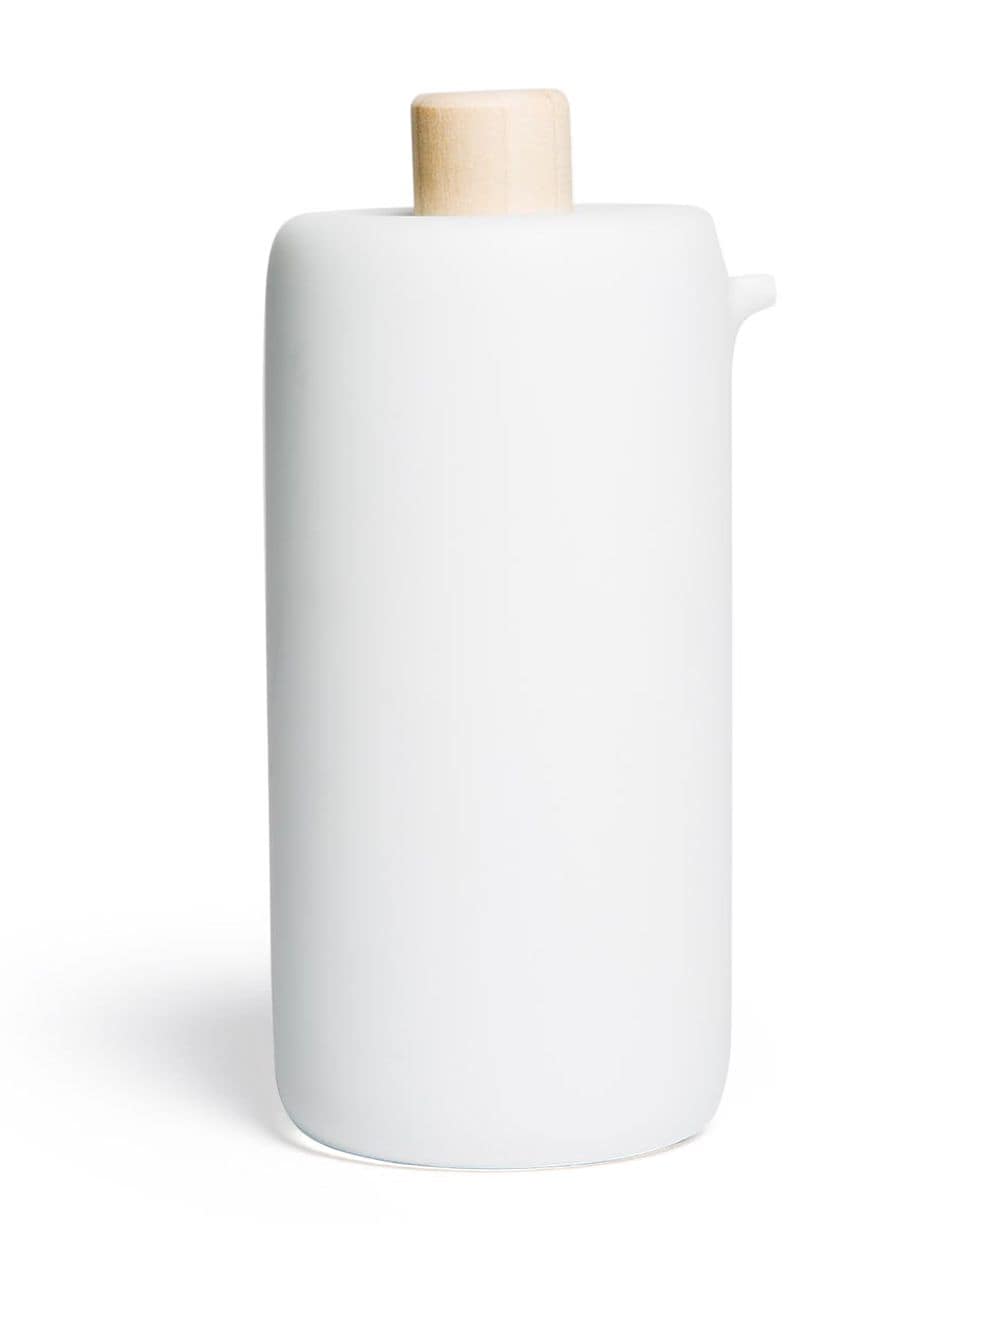 hands on design bombetta oil dispenser - white